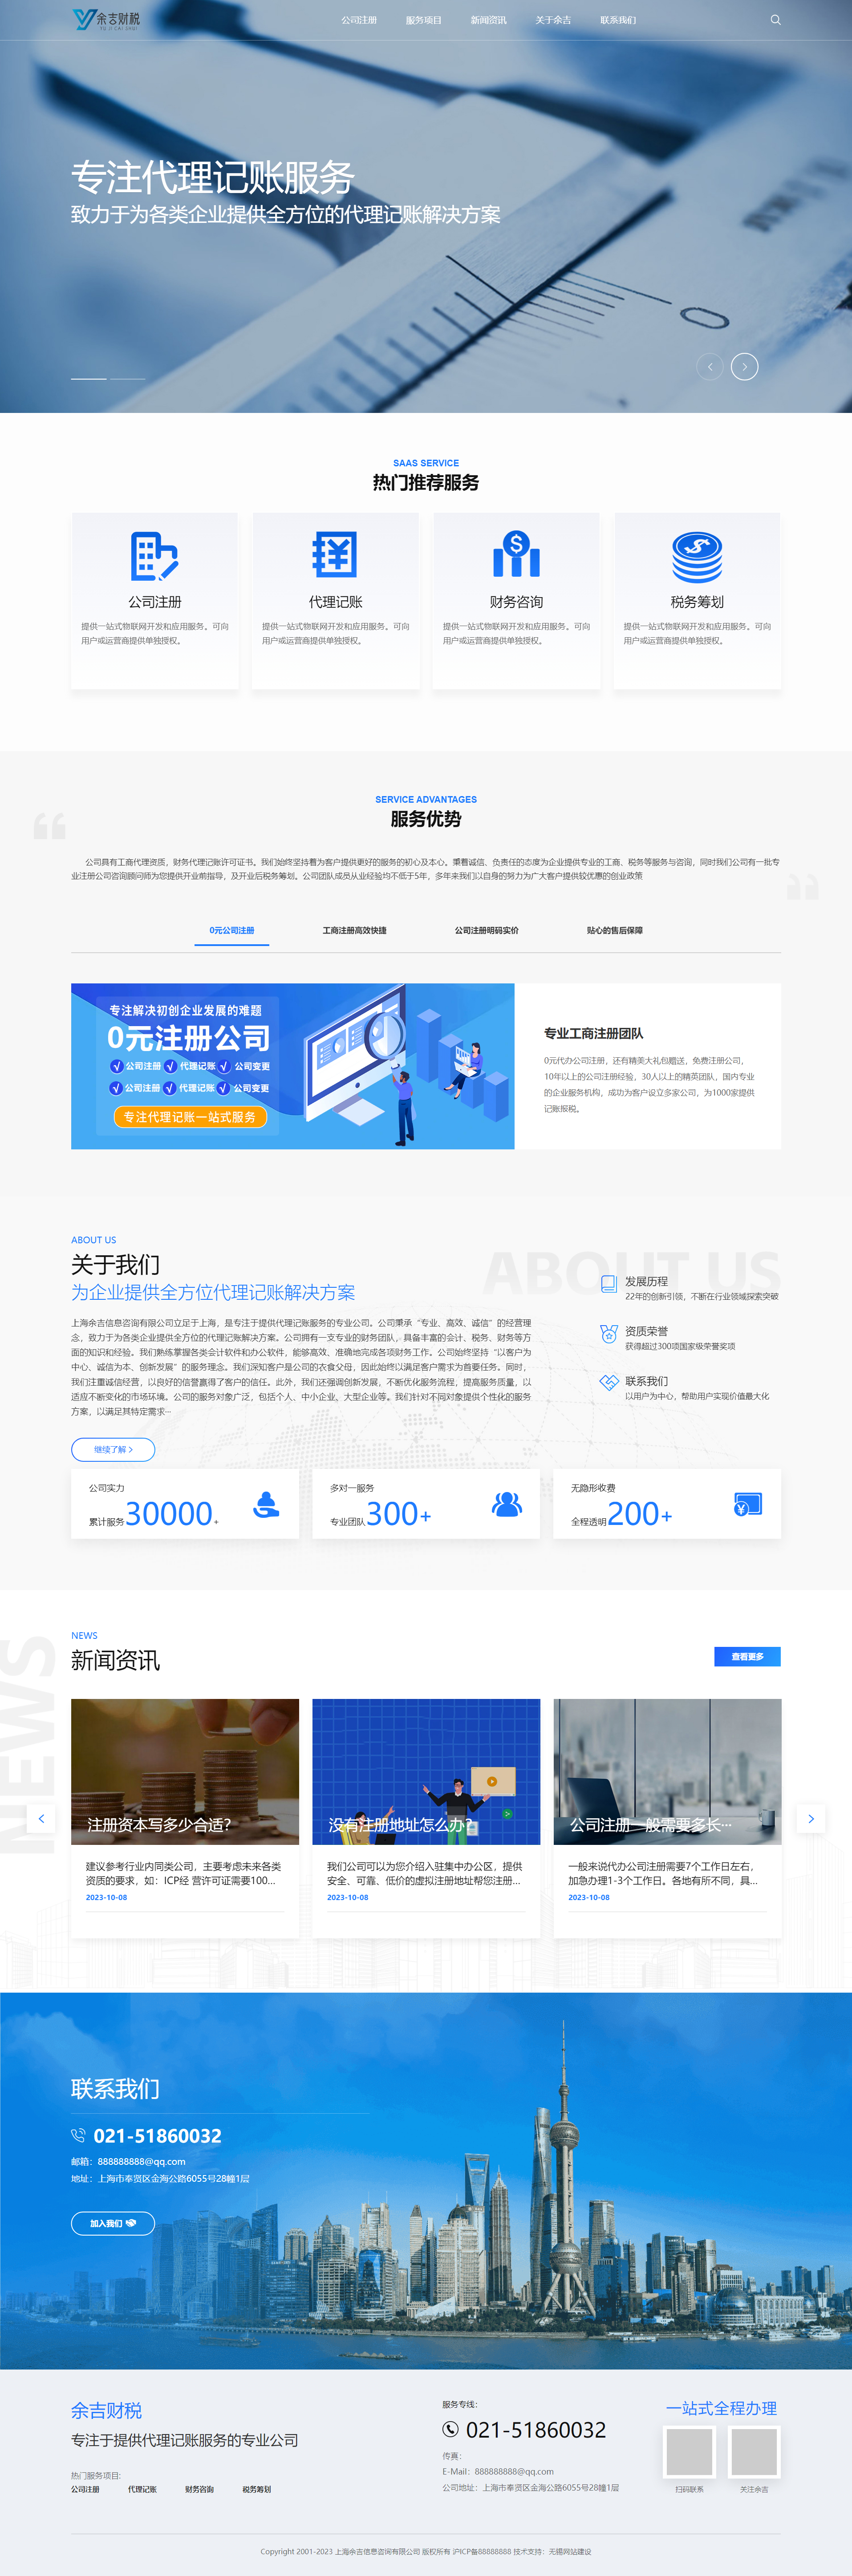 上海余吉财税品牌网站建设 PC端预览图